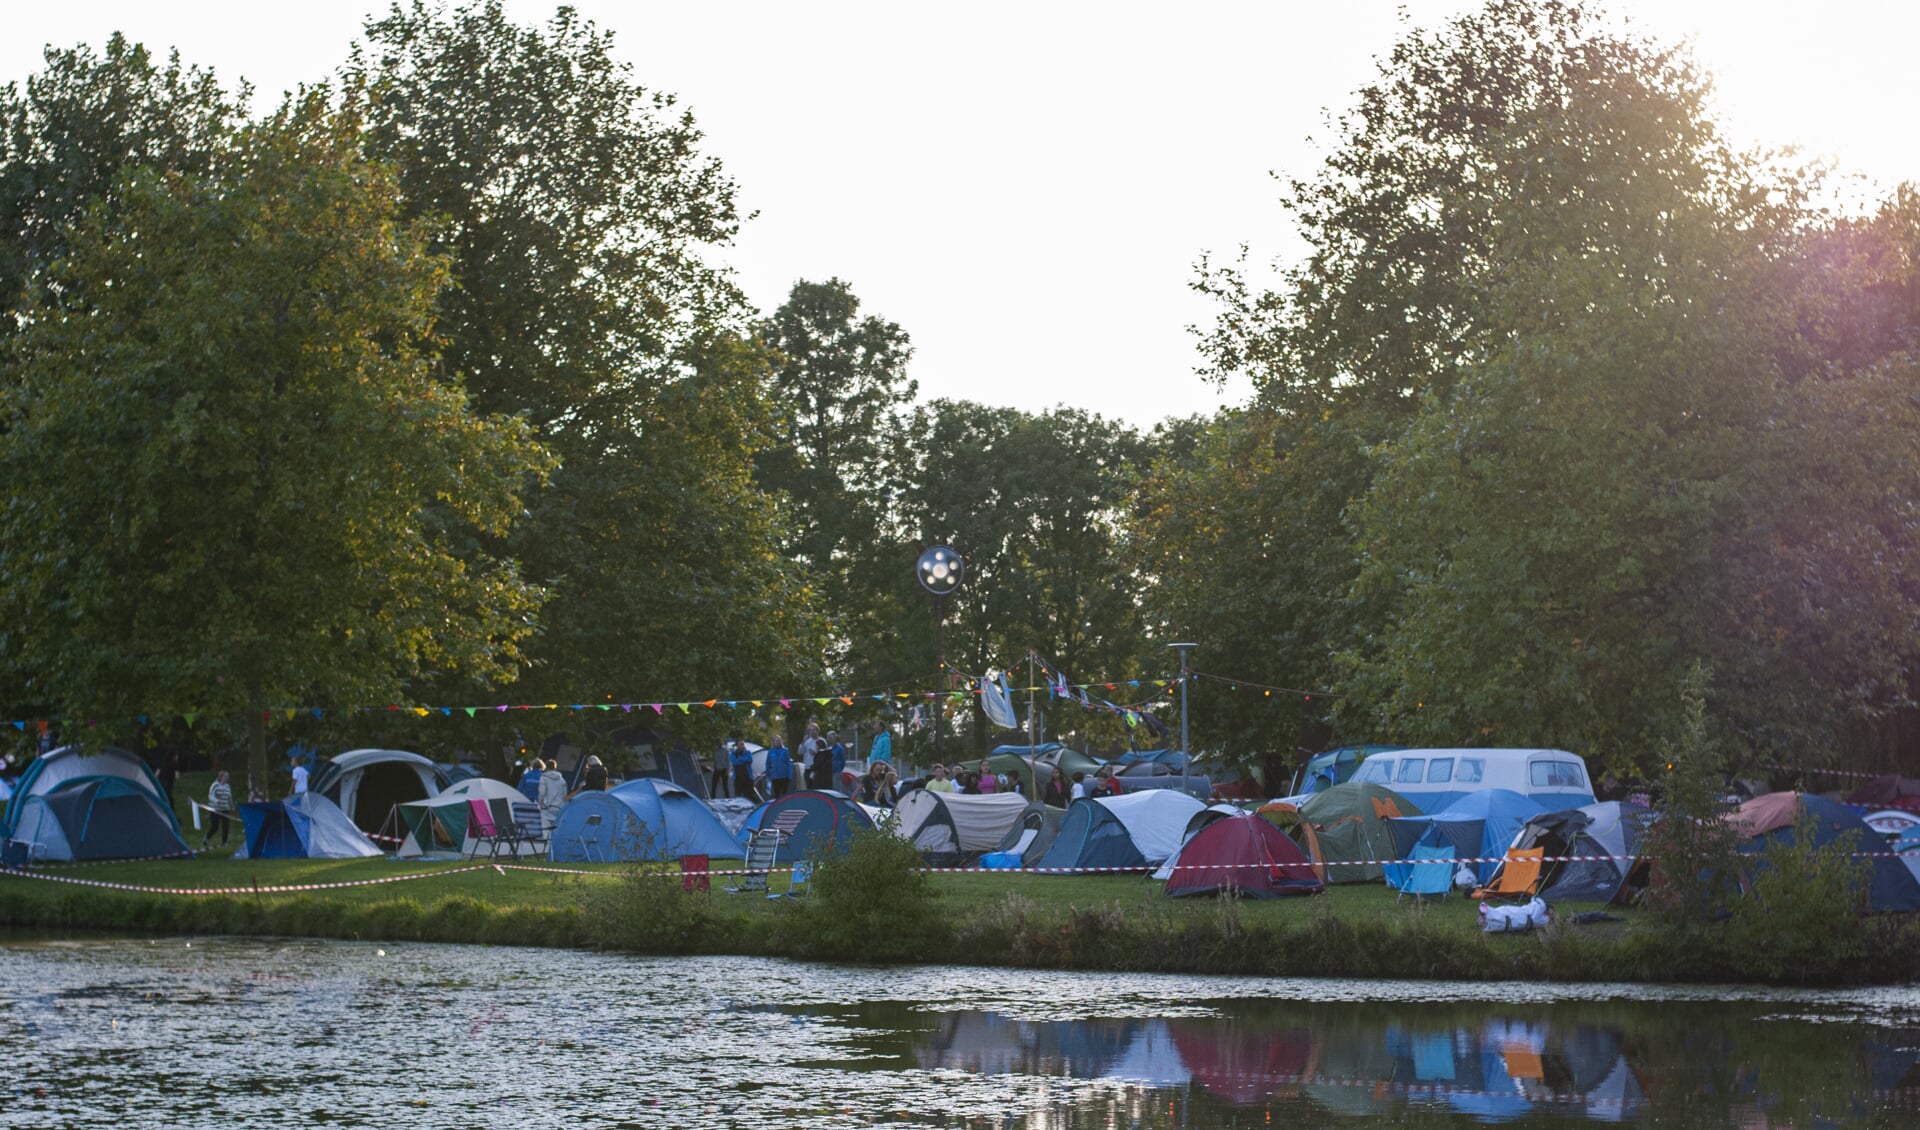 Het schoolterrein van het Martinuscollege in Grootebroek wordt voor twee dagen omgetoverd tot een camping voor leerlingen.